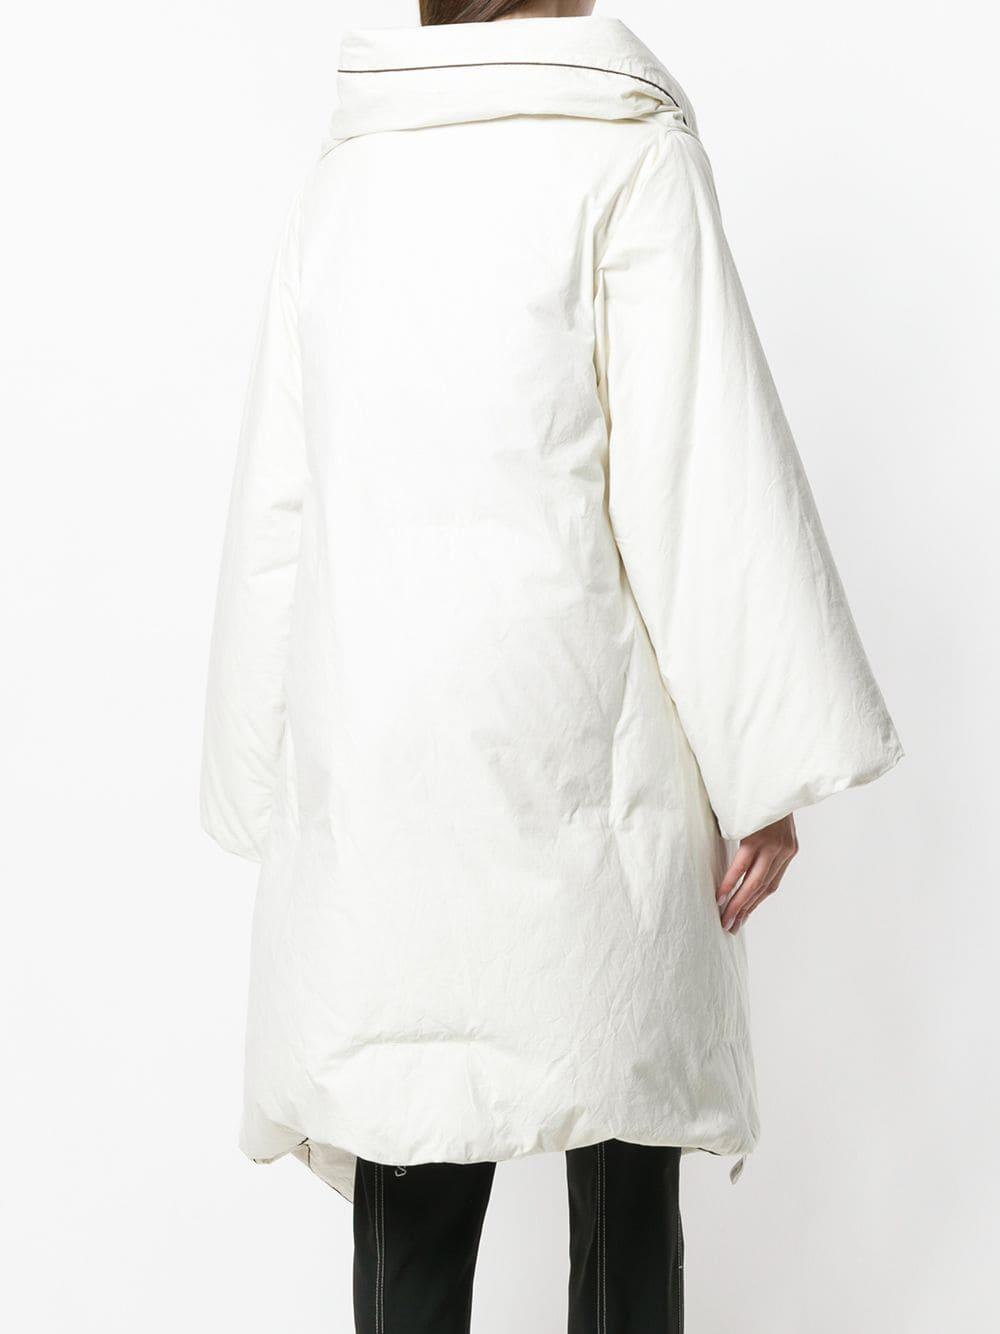 Maison Martin Margiela Pre-Owned 1999 Artisanal Duvet Coat in White | Lyst  Australia